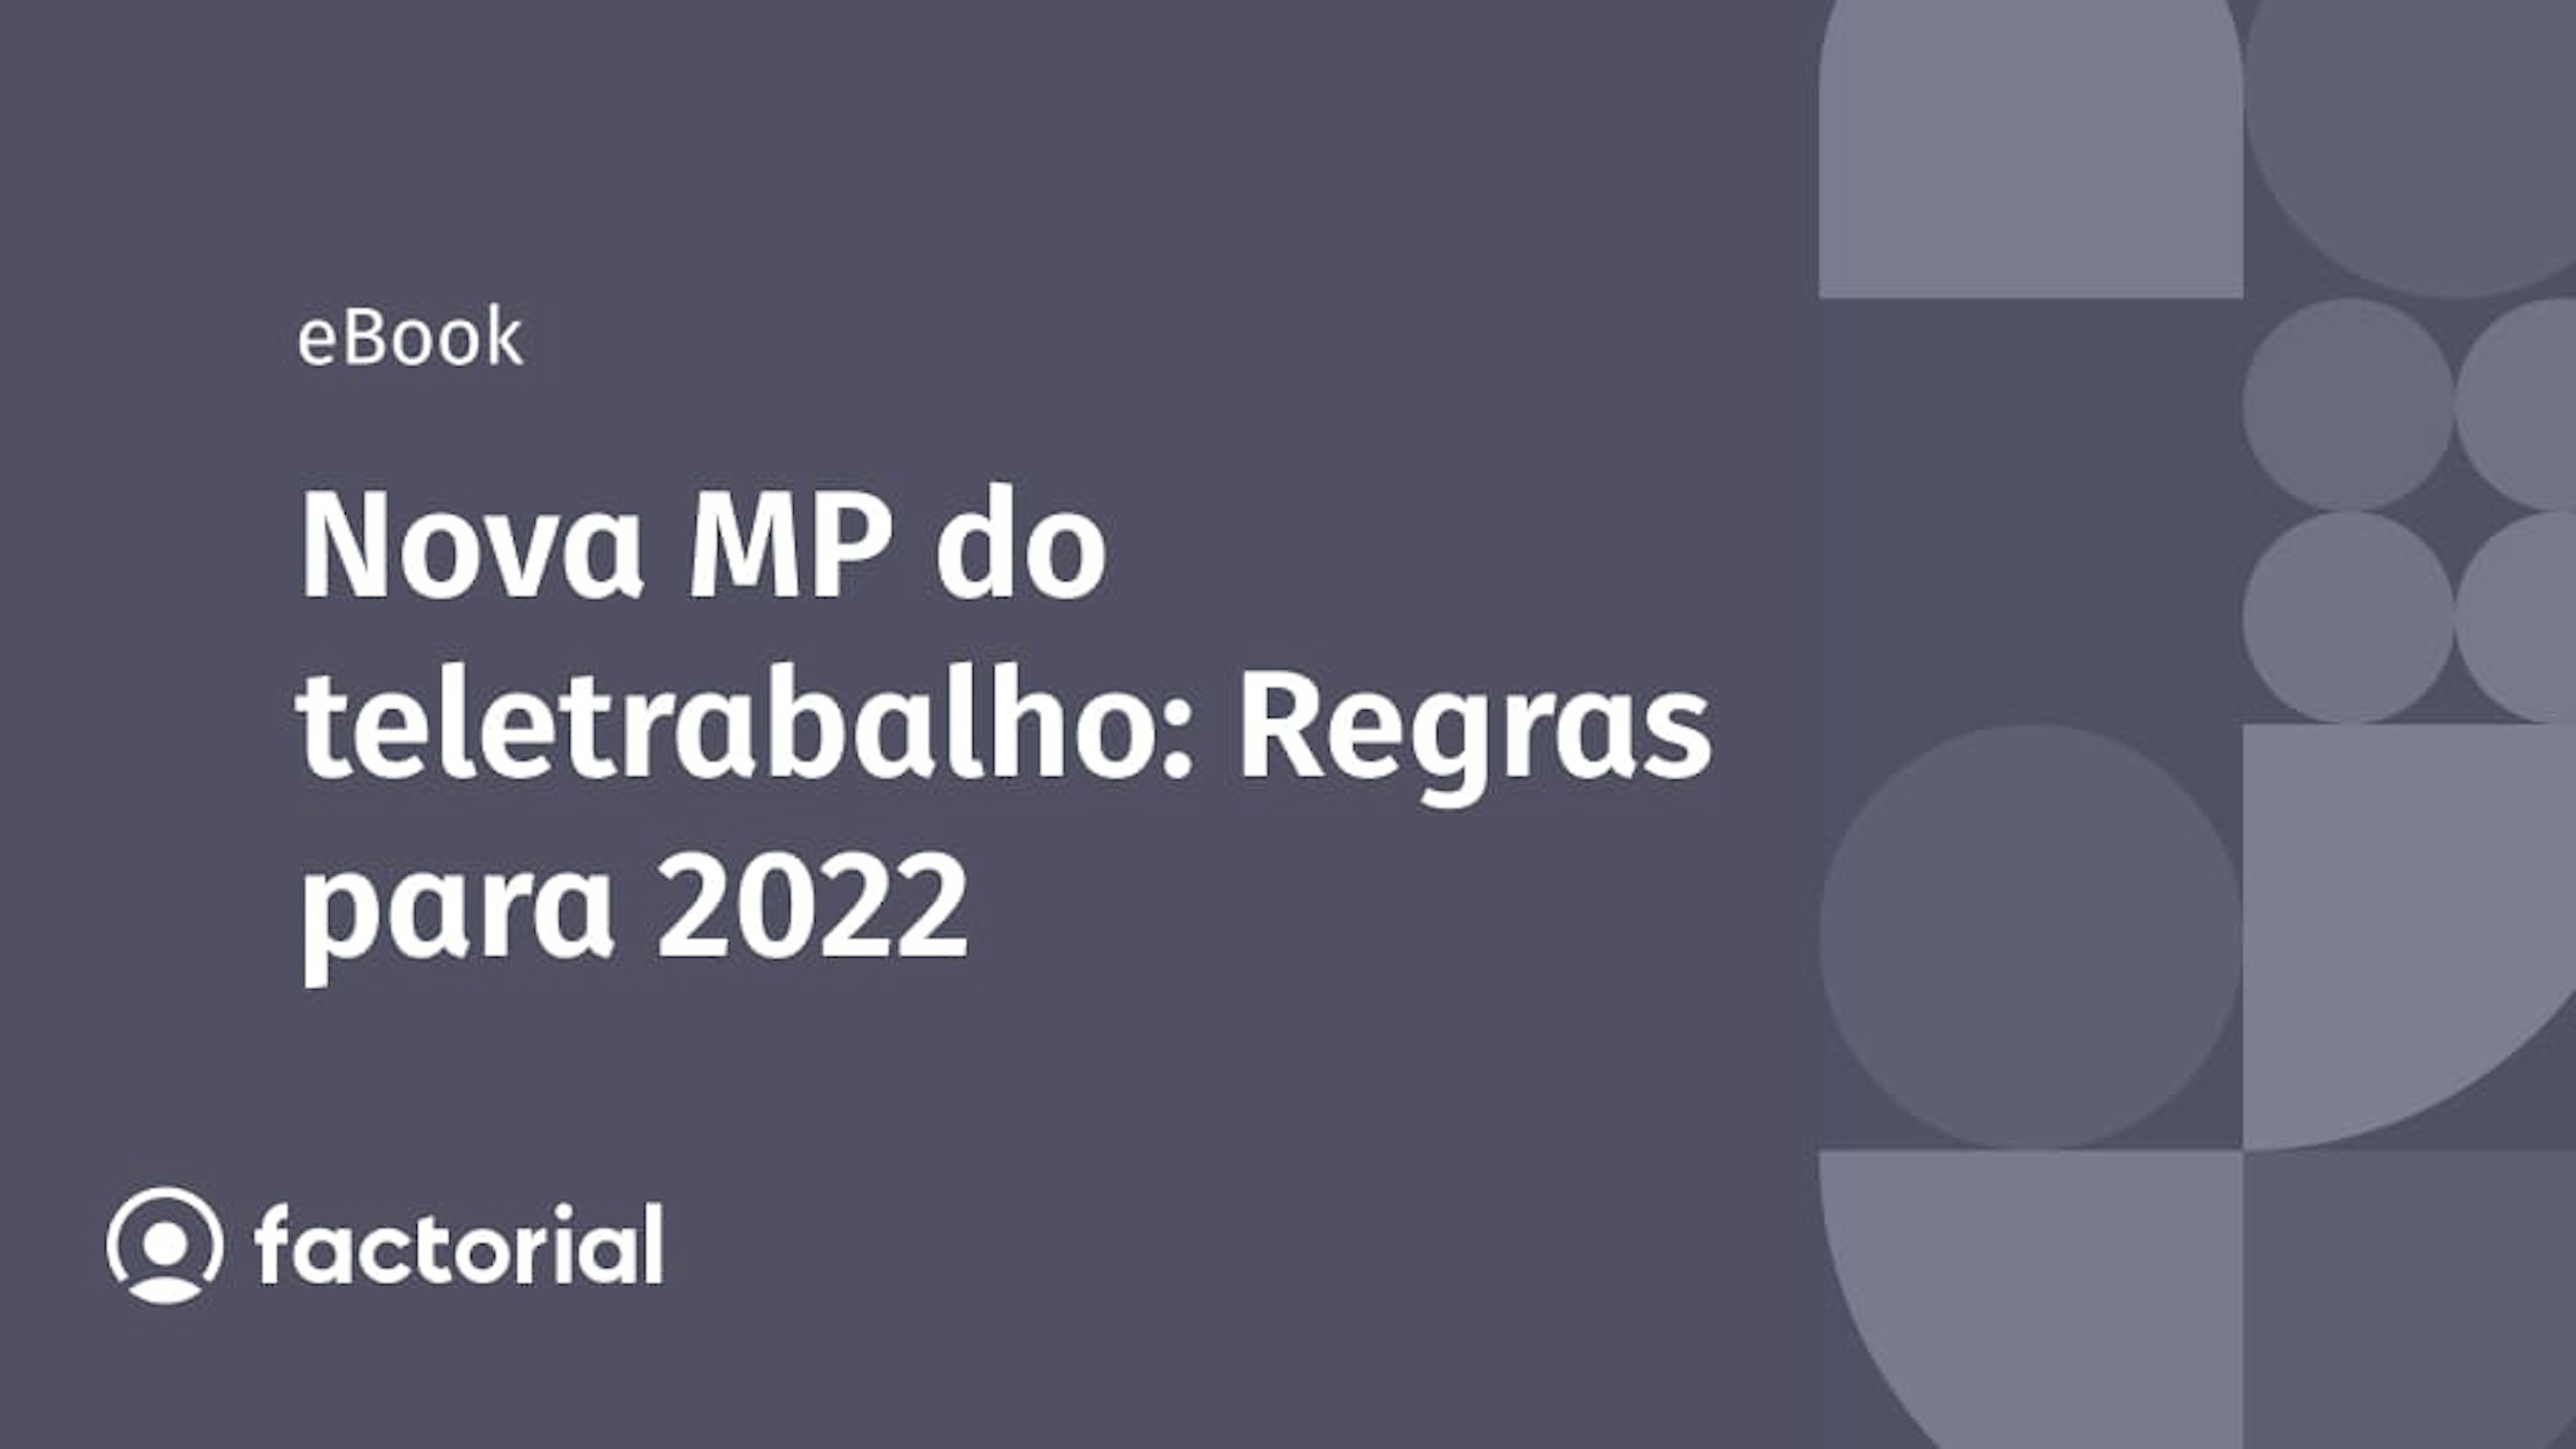 Nova MP do teletrabalho: Regras para 2022